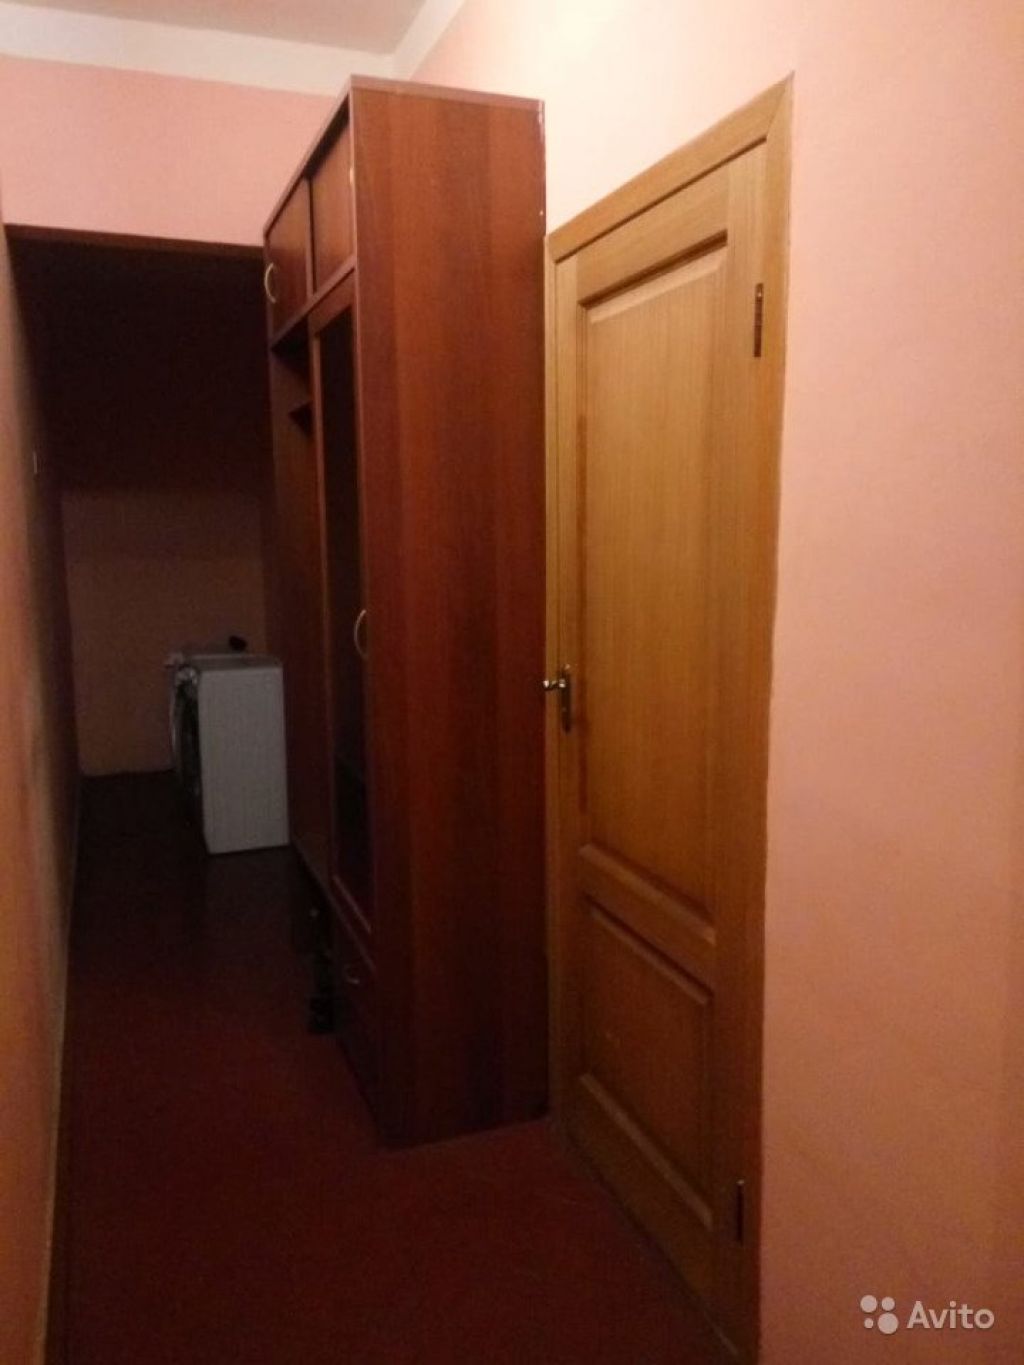 Комната 16.1 м² в 3-к, 6/10 эт. в Москве. Фото 1